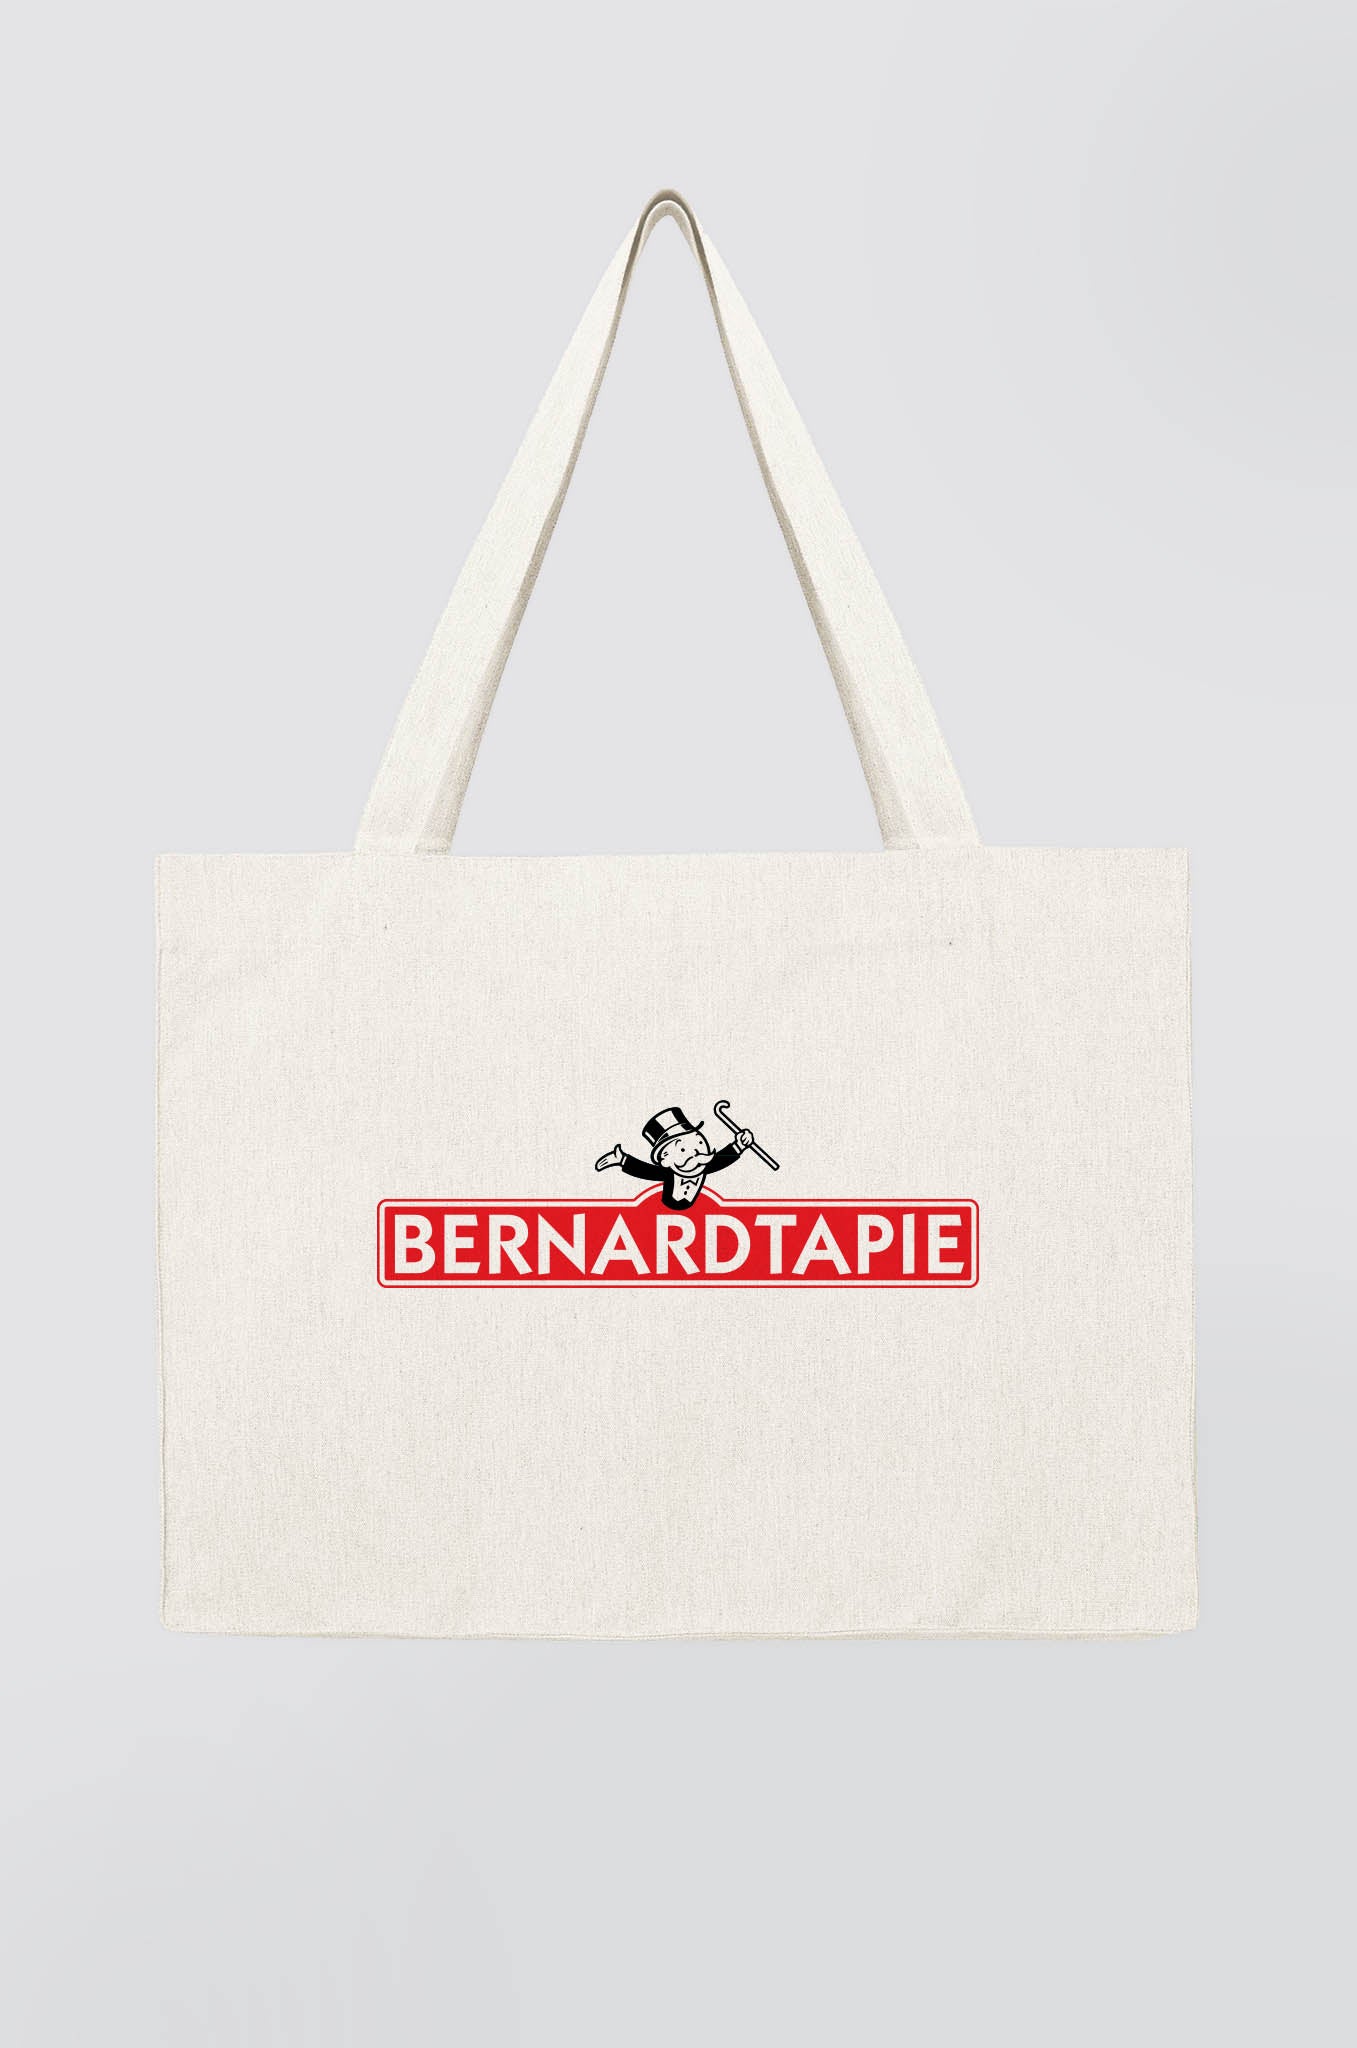 Bernard Tapie Monopoly